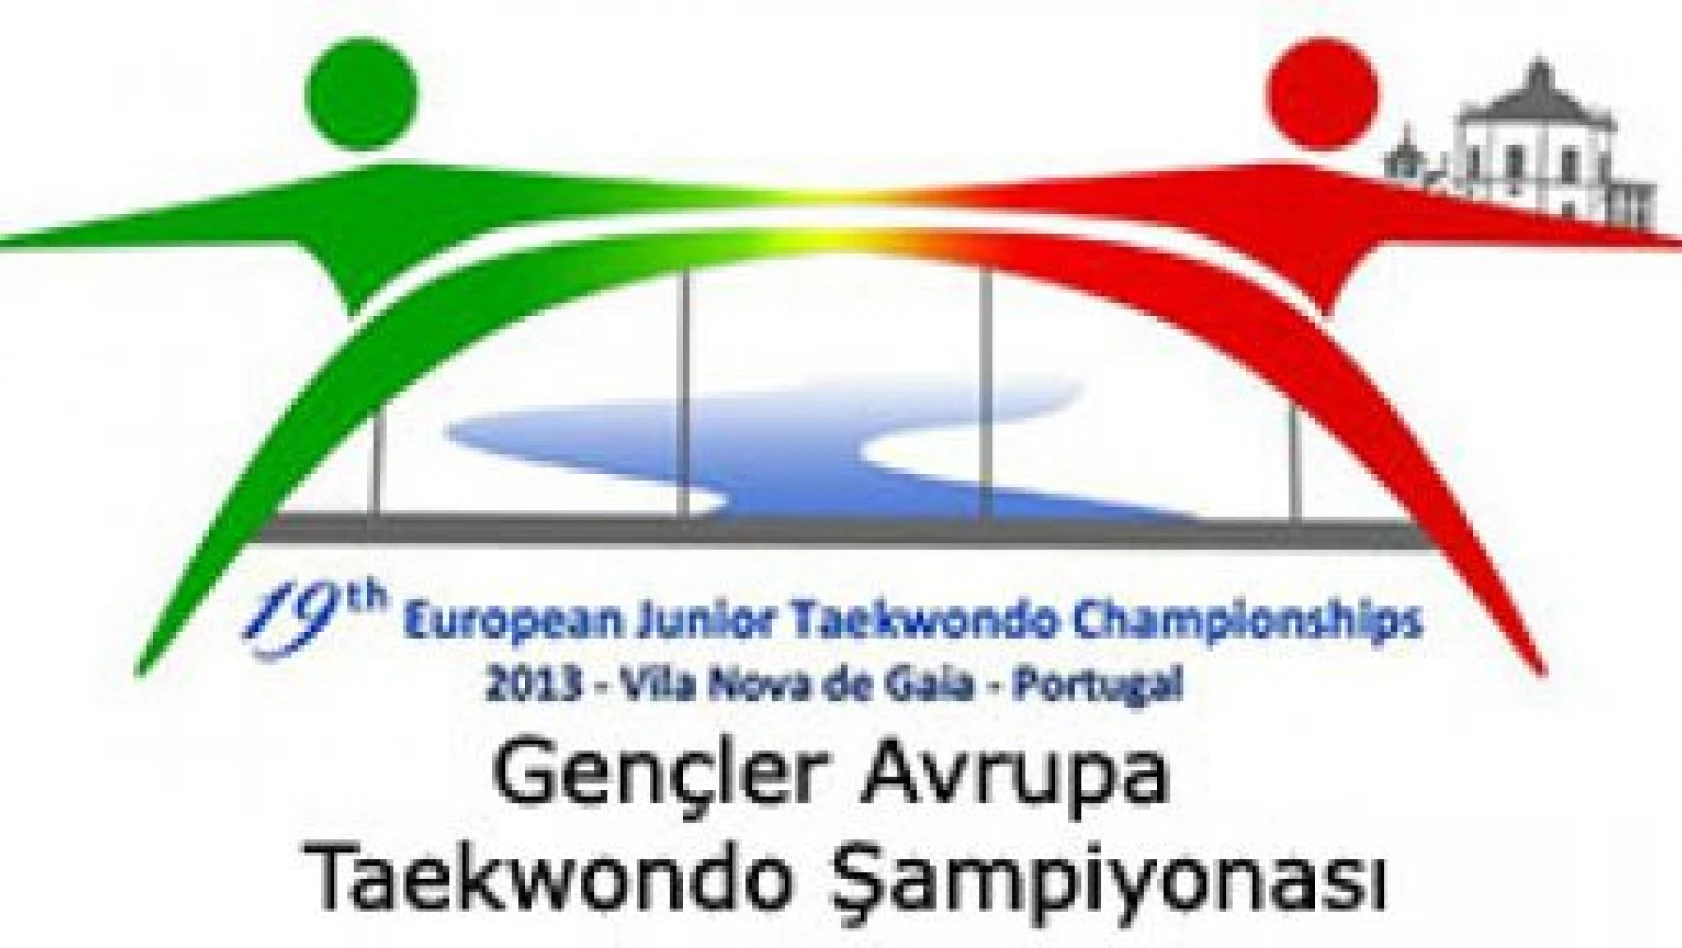 Avrupa Gençler Taekwondo Şampiyonasının 3. Gününde Kılıç'tan Altın Madalya